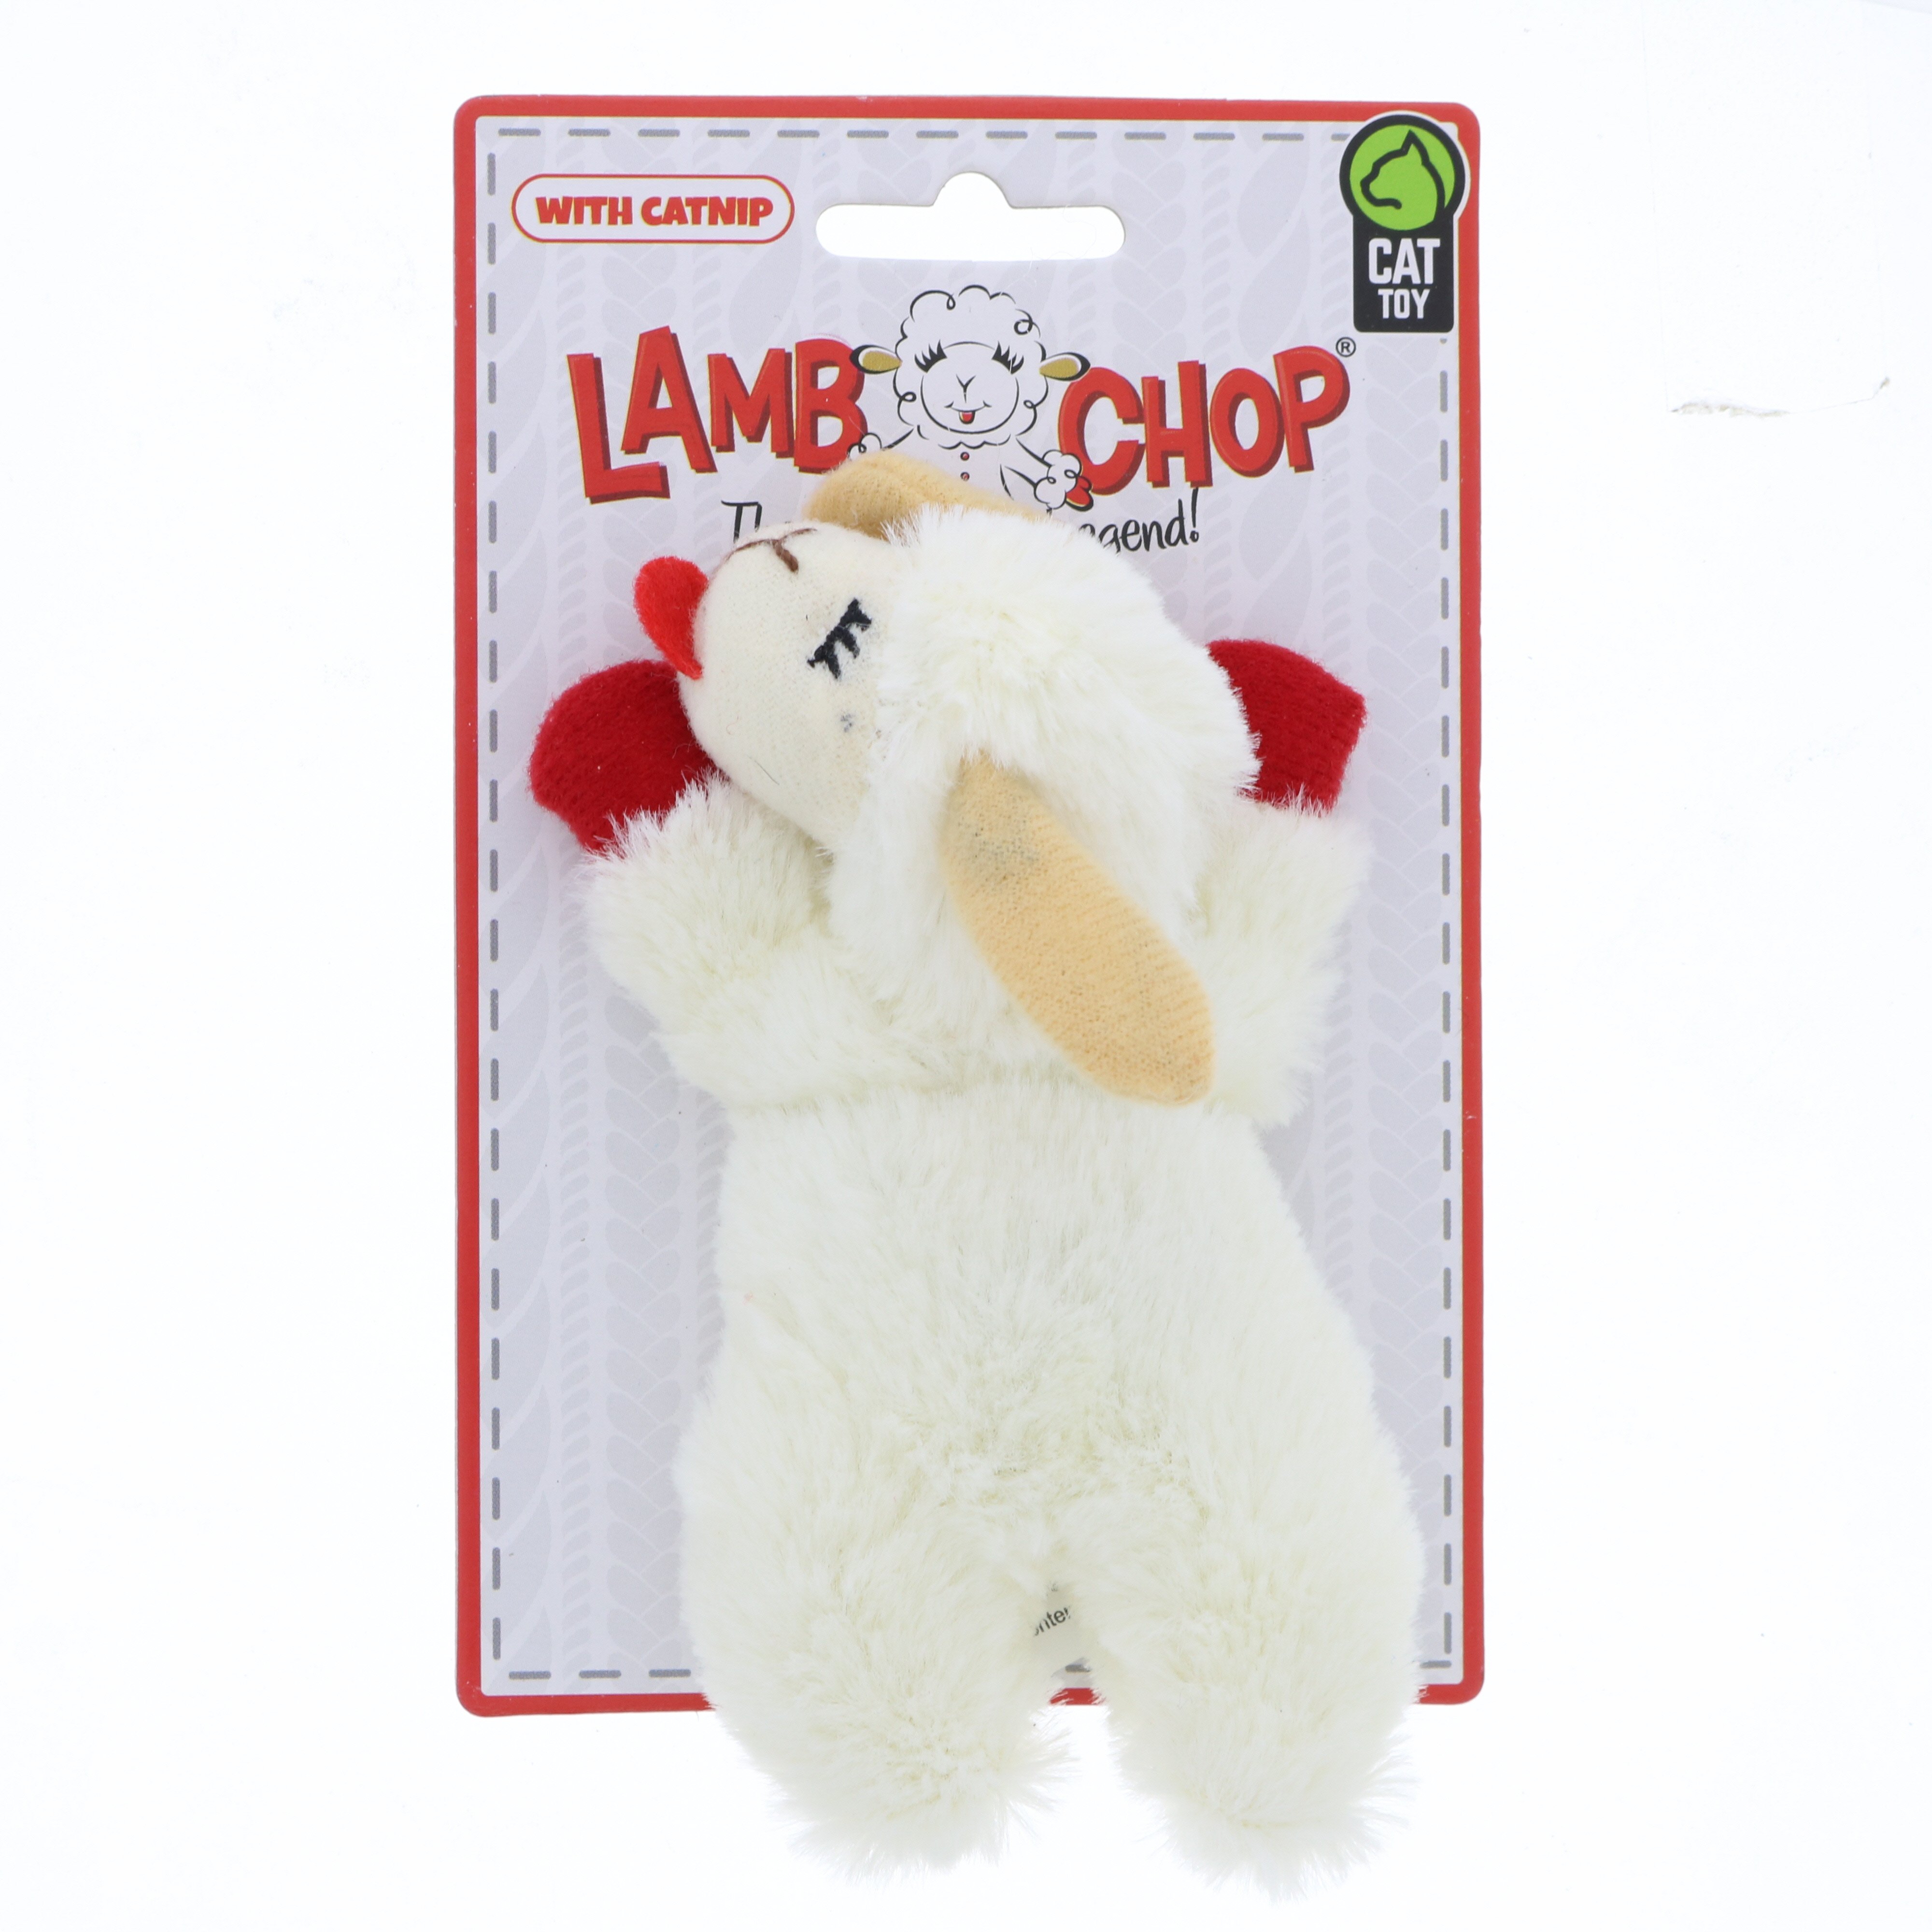 multipet lamb chop